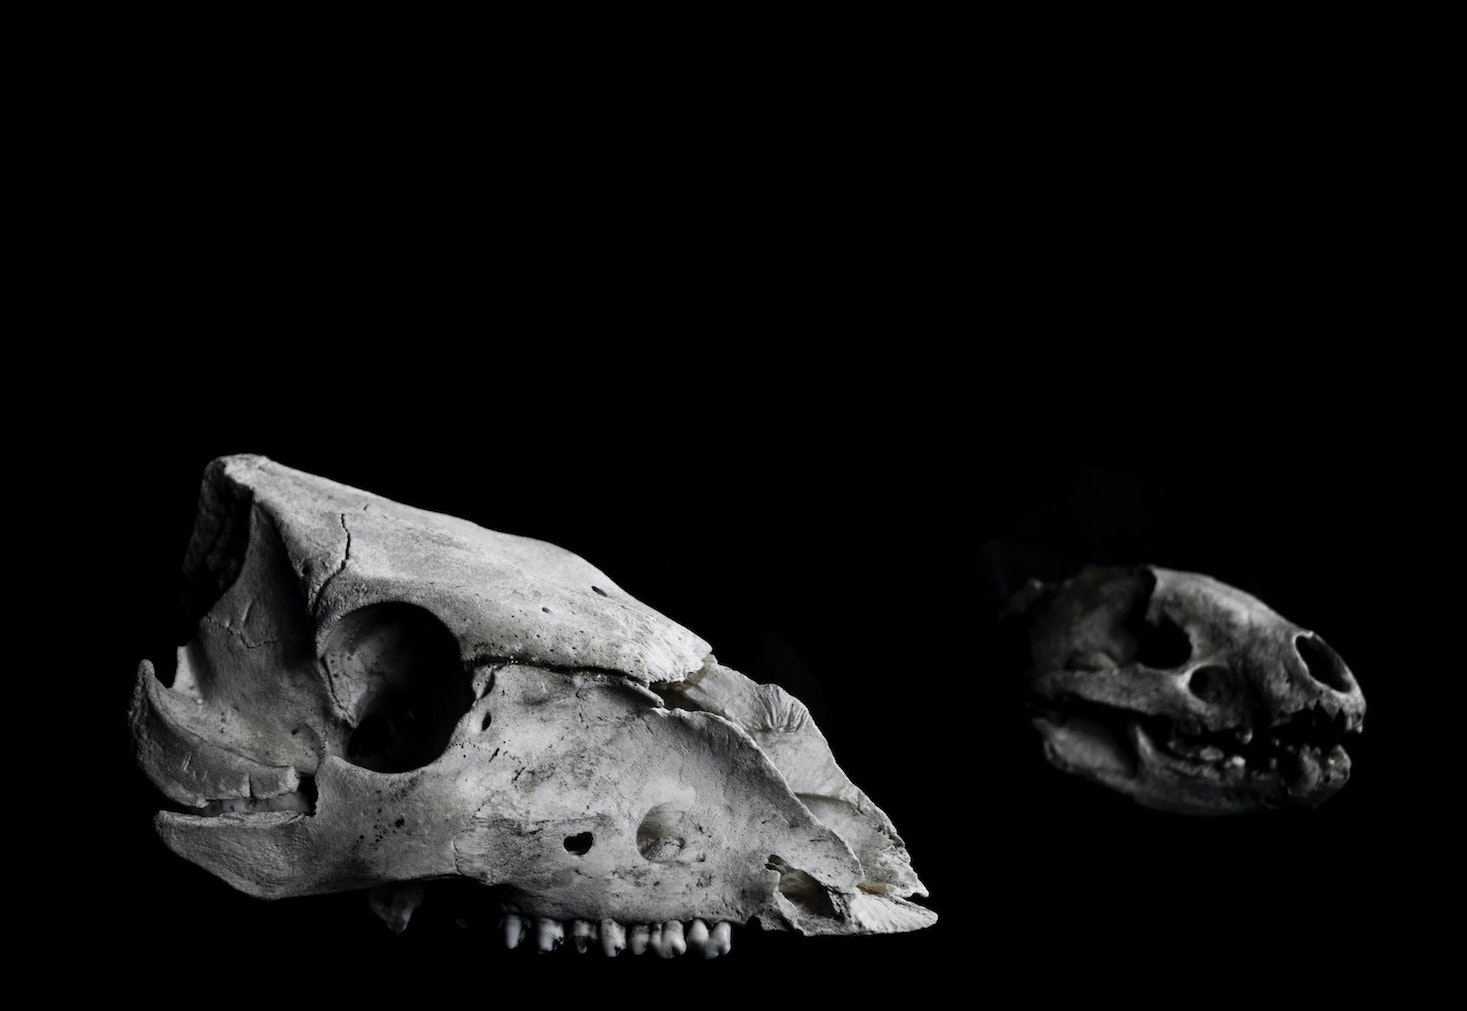 Sorprendente descubrimiento arqueológico: se han encontrado restos fósiles del primer lobo de Europa en Roma